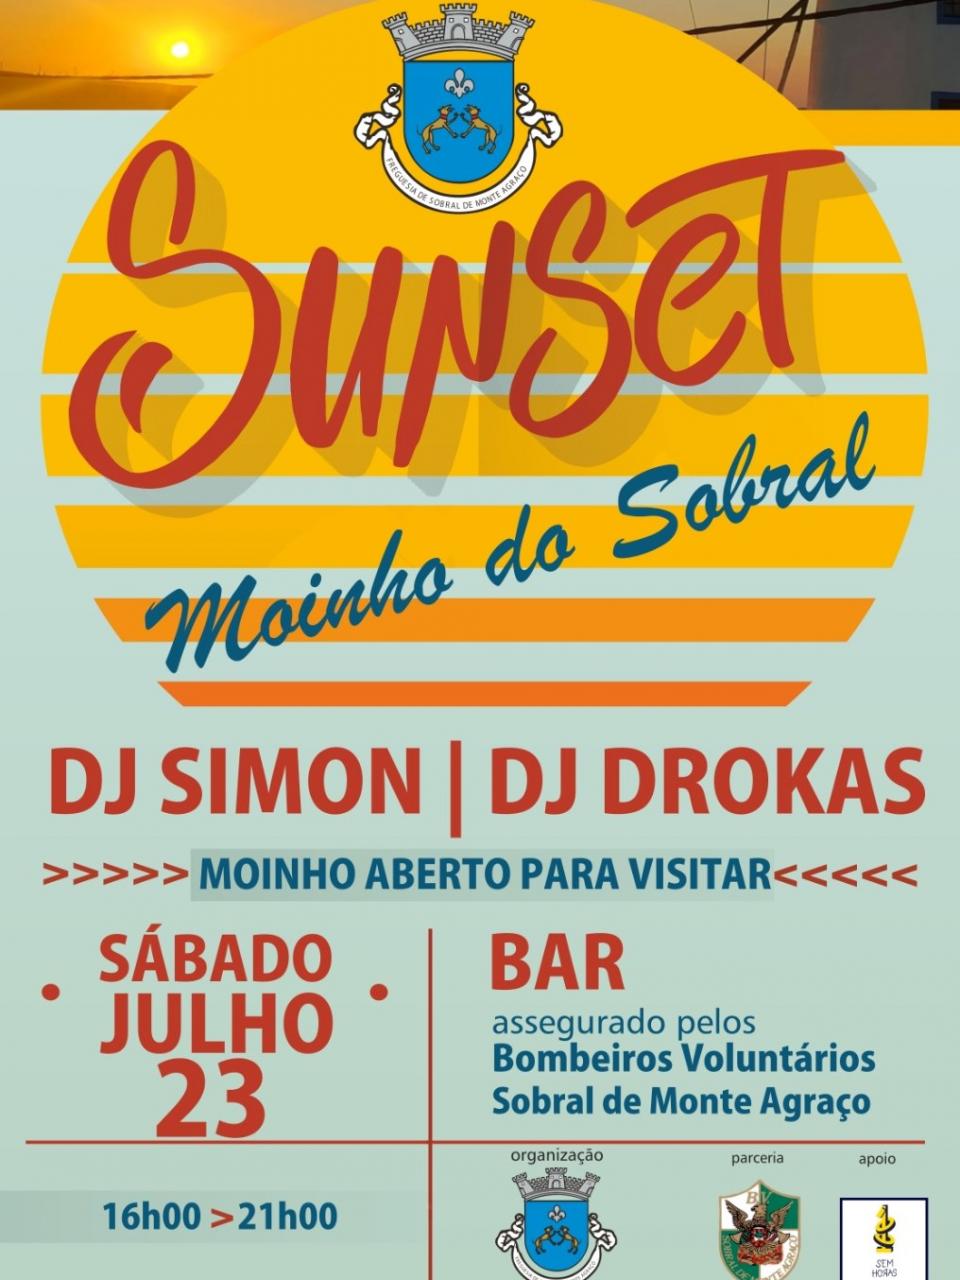 SUNSET MOINHO DO SOBRAL